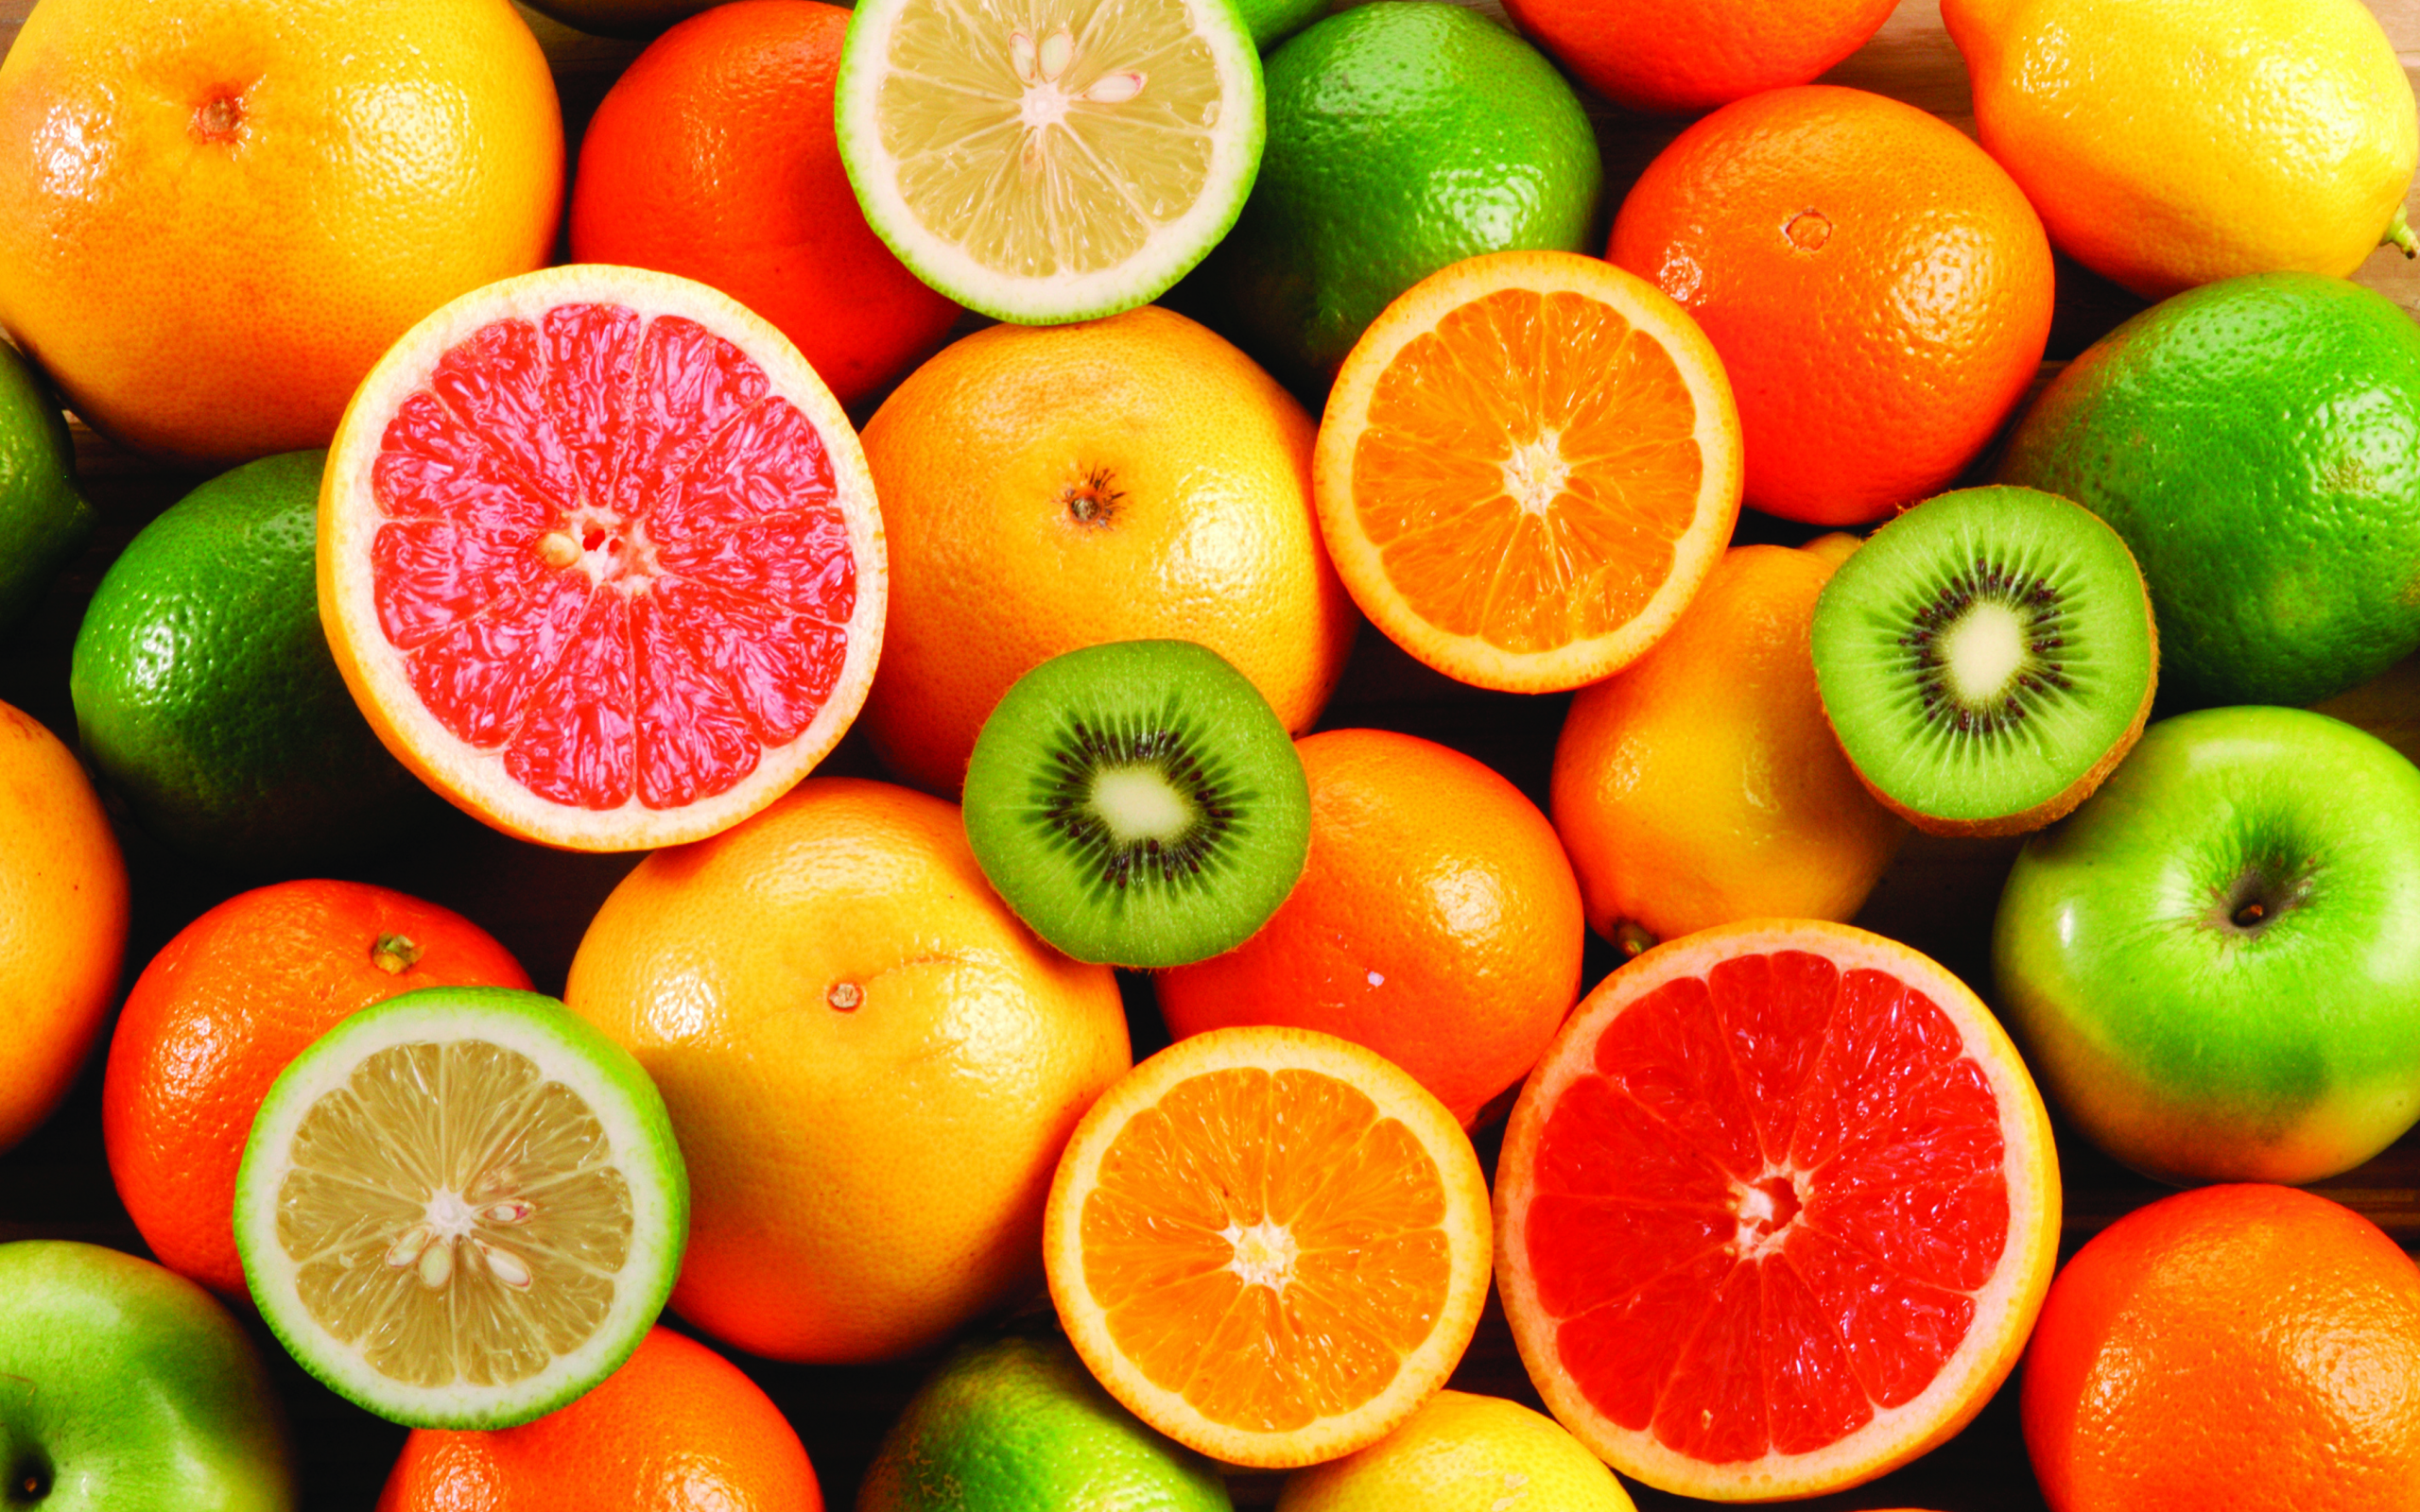 лимоны, апельсины, киви, фрукты